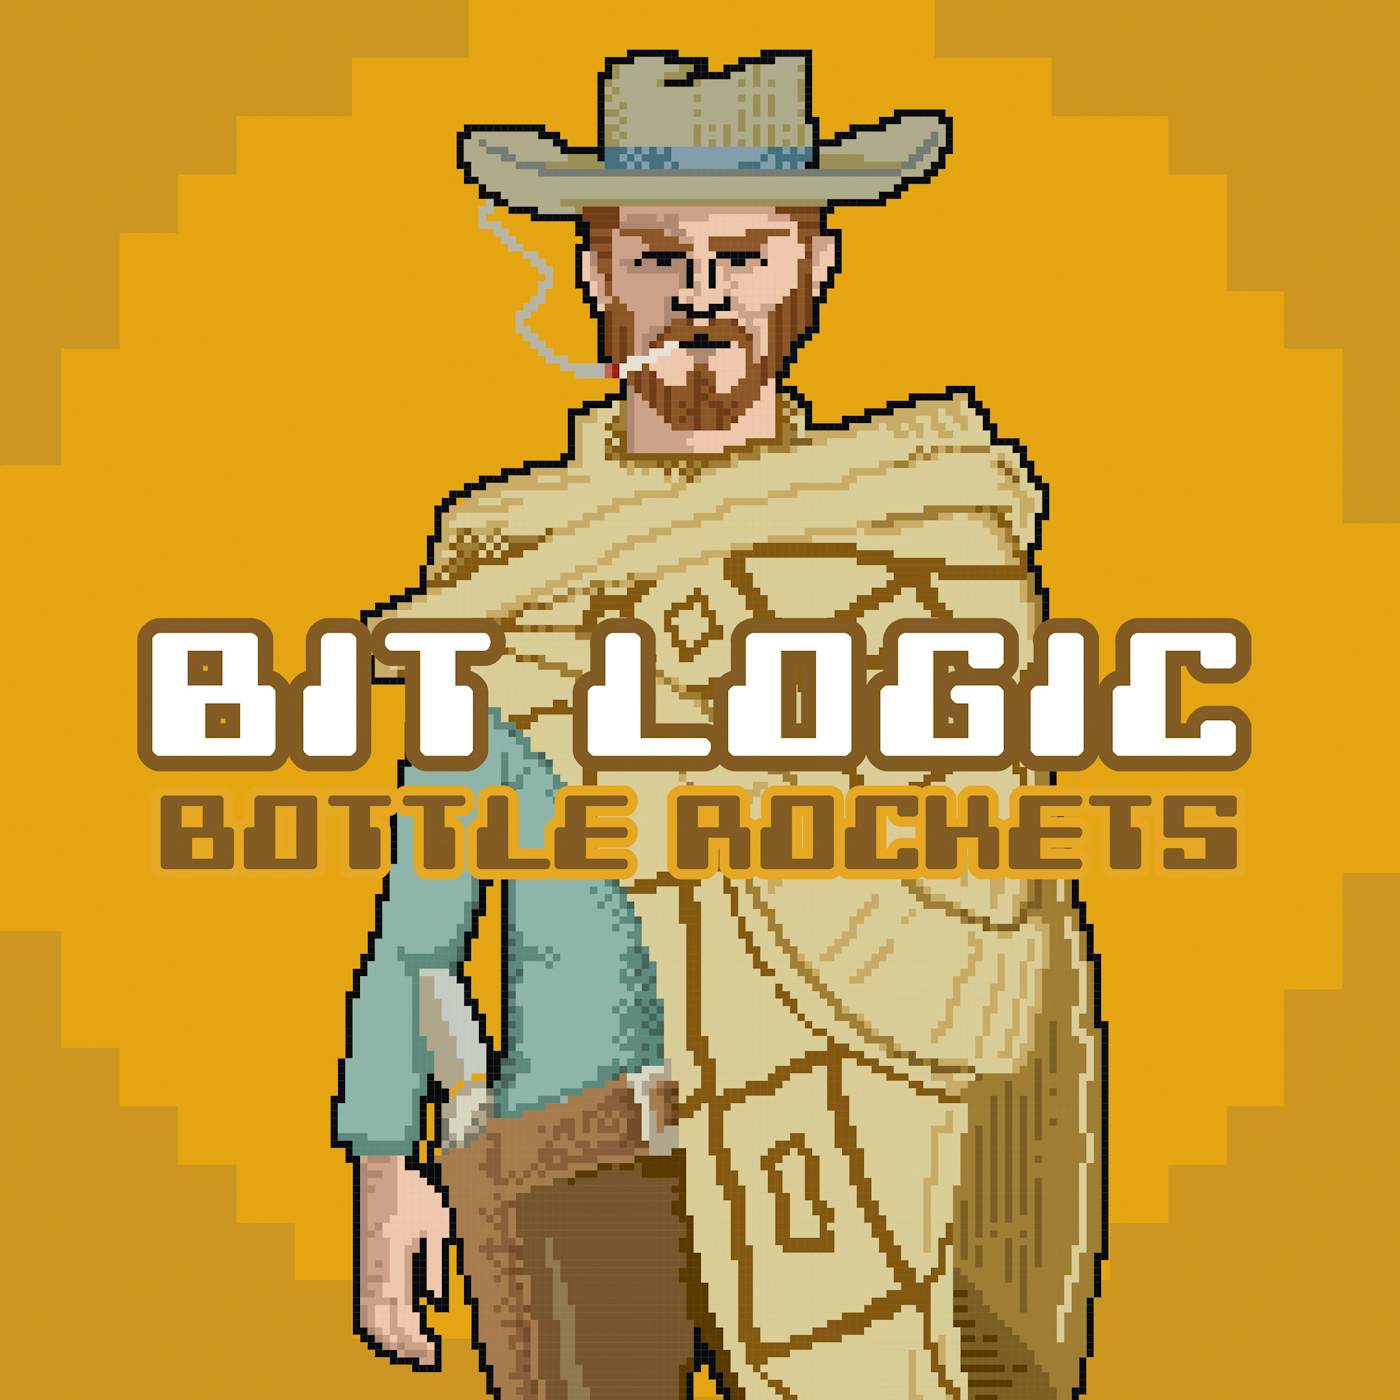 The Bottle Rockets BIT LOGIC CD